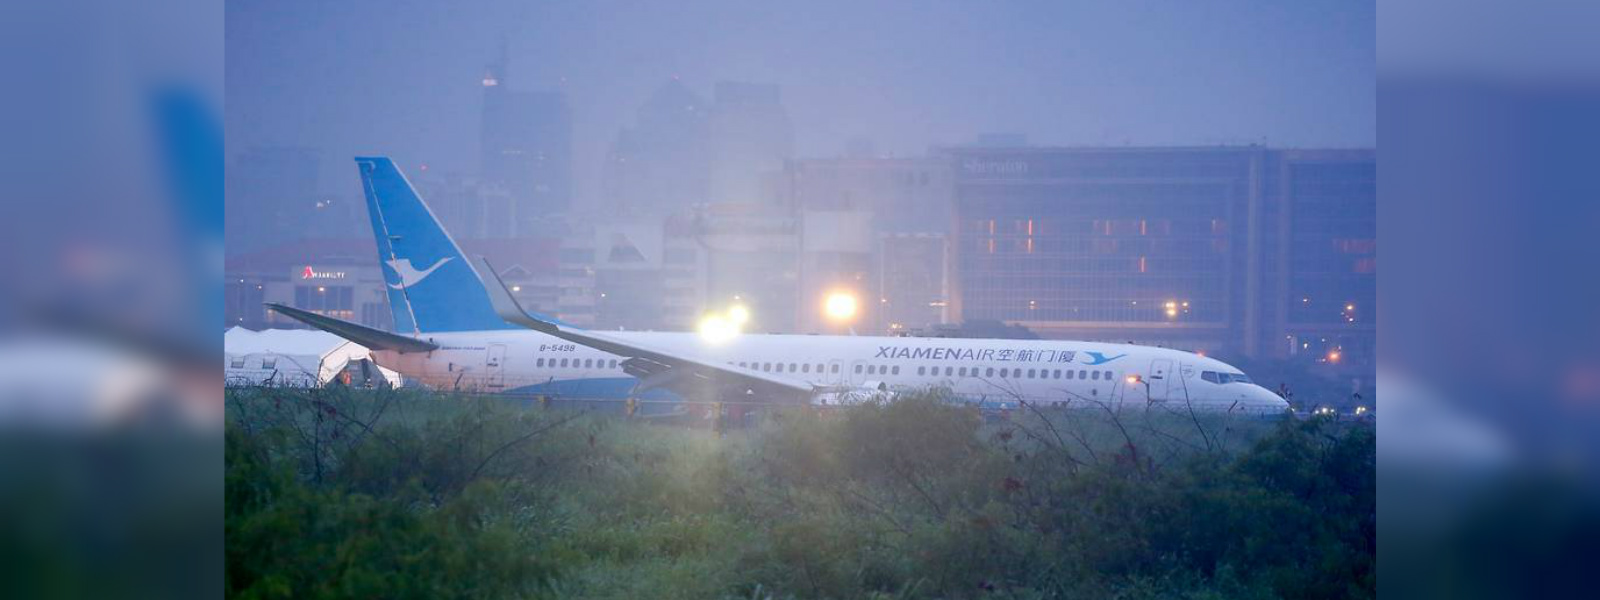 Passenger jet overshoots runway in Manila